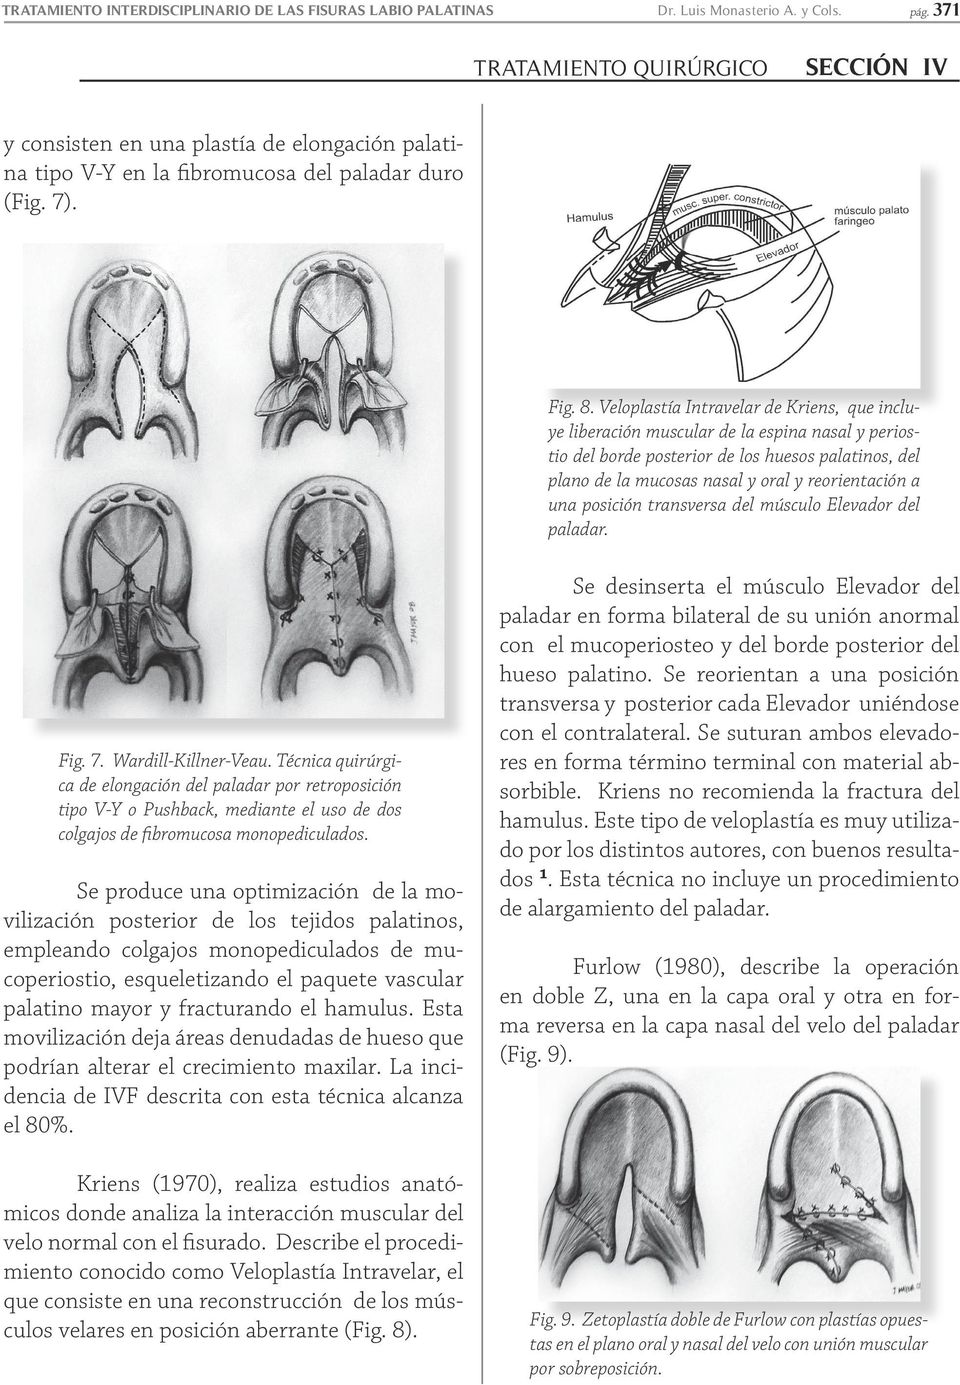 Veloplastía Intravelar de Kriens, que incluye liberación muscular de la espina nasal y periostio del borde posterior de los huesos palatinos, del plano de la mucosas nasal y oral y reorientación a